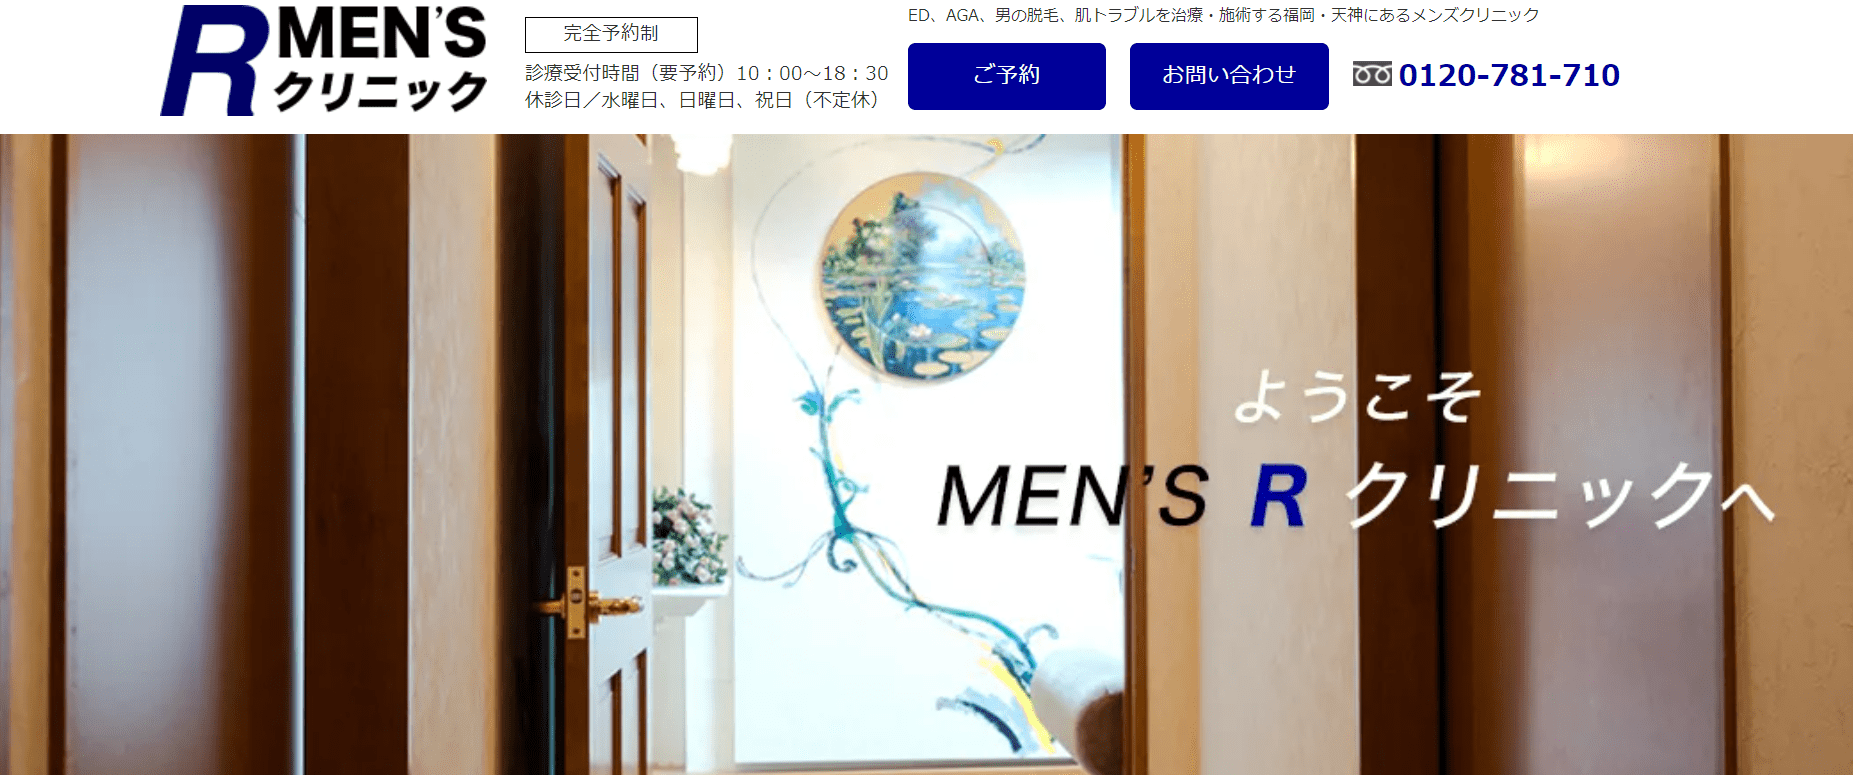 福岡市で評判のED治療におすすめのクリニック10選 MEN’S R クリニック